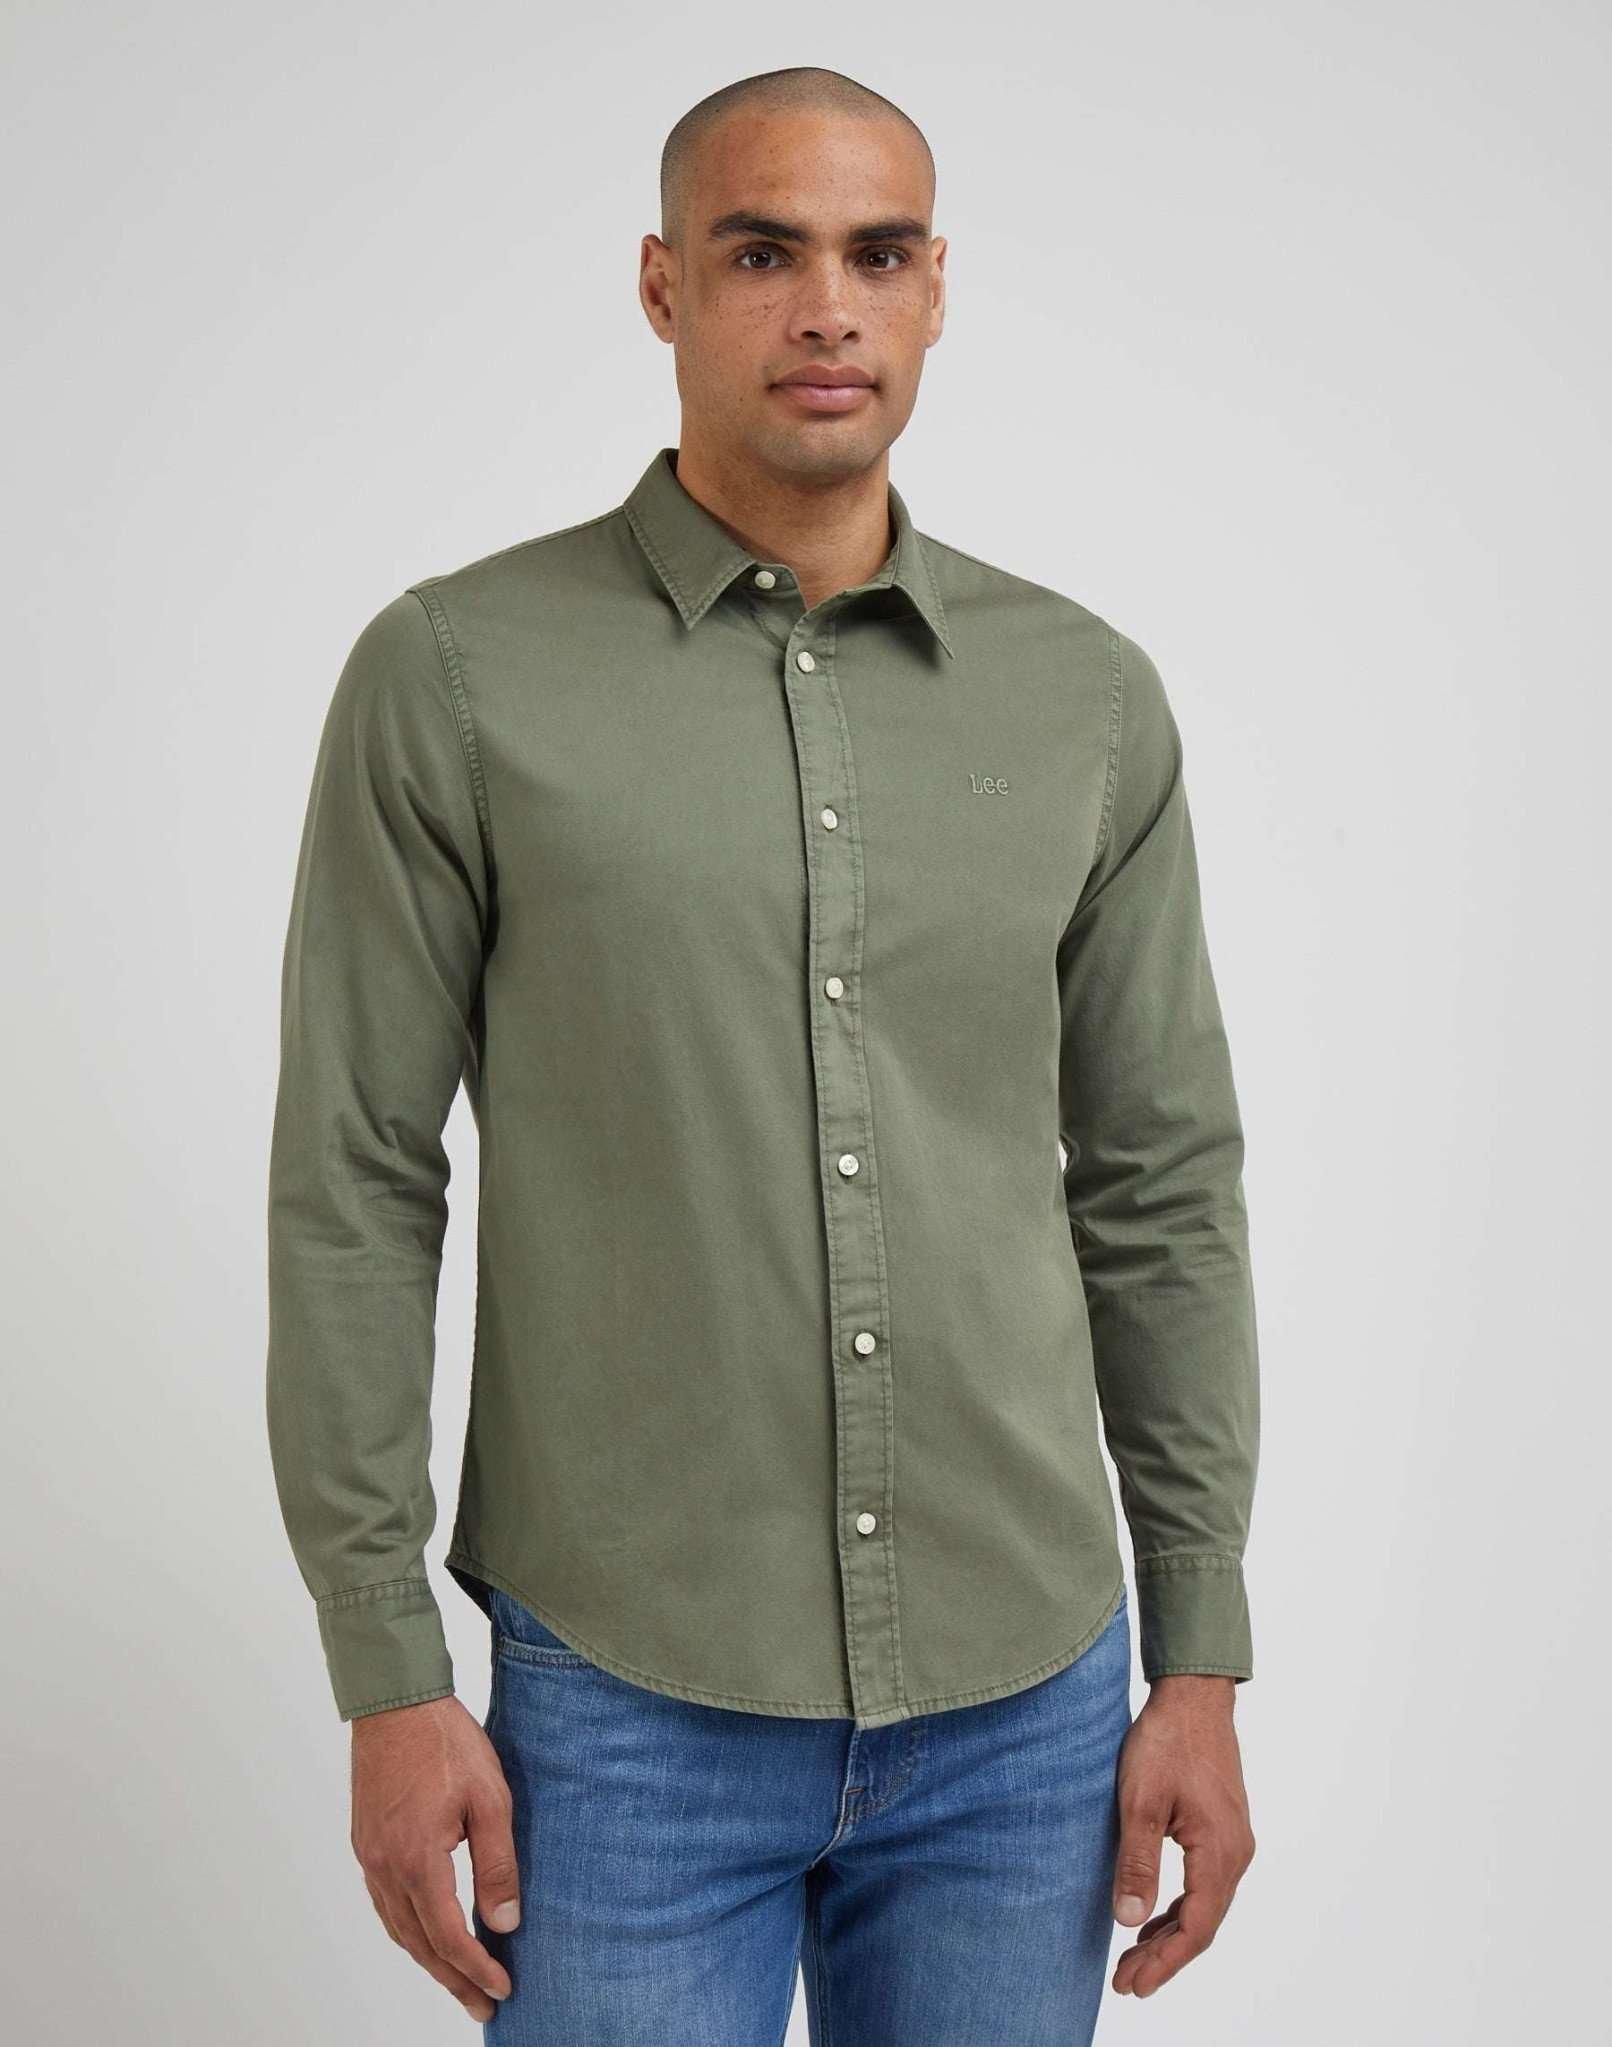 Hemden Patch Shirt Herren Grün XL von Lee